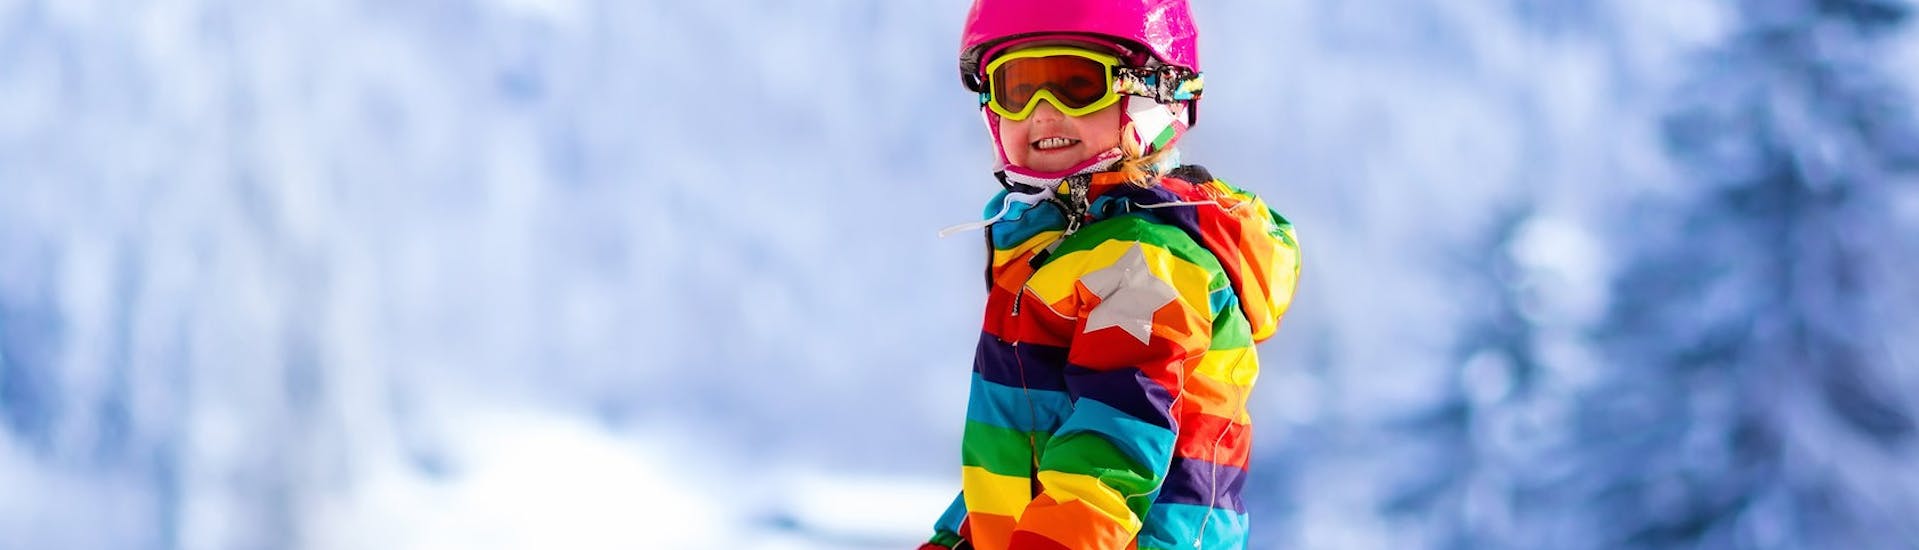 Kinder-Skikurs ab 6 Jahren für Anfänger.